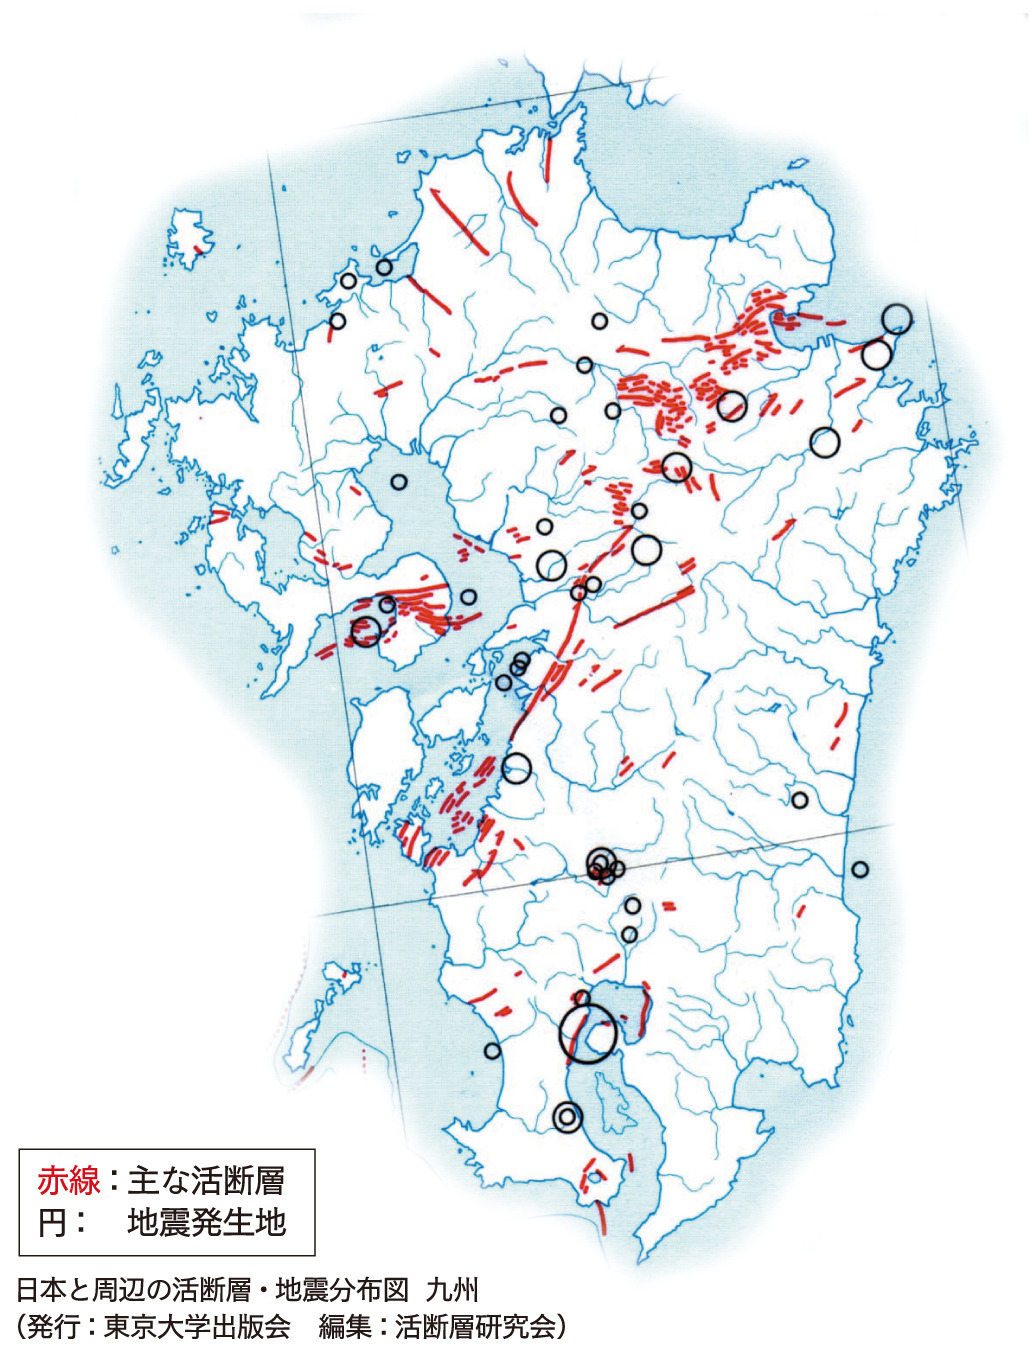 九州の活断層入りの地図